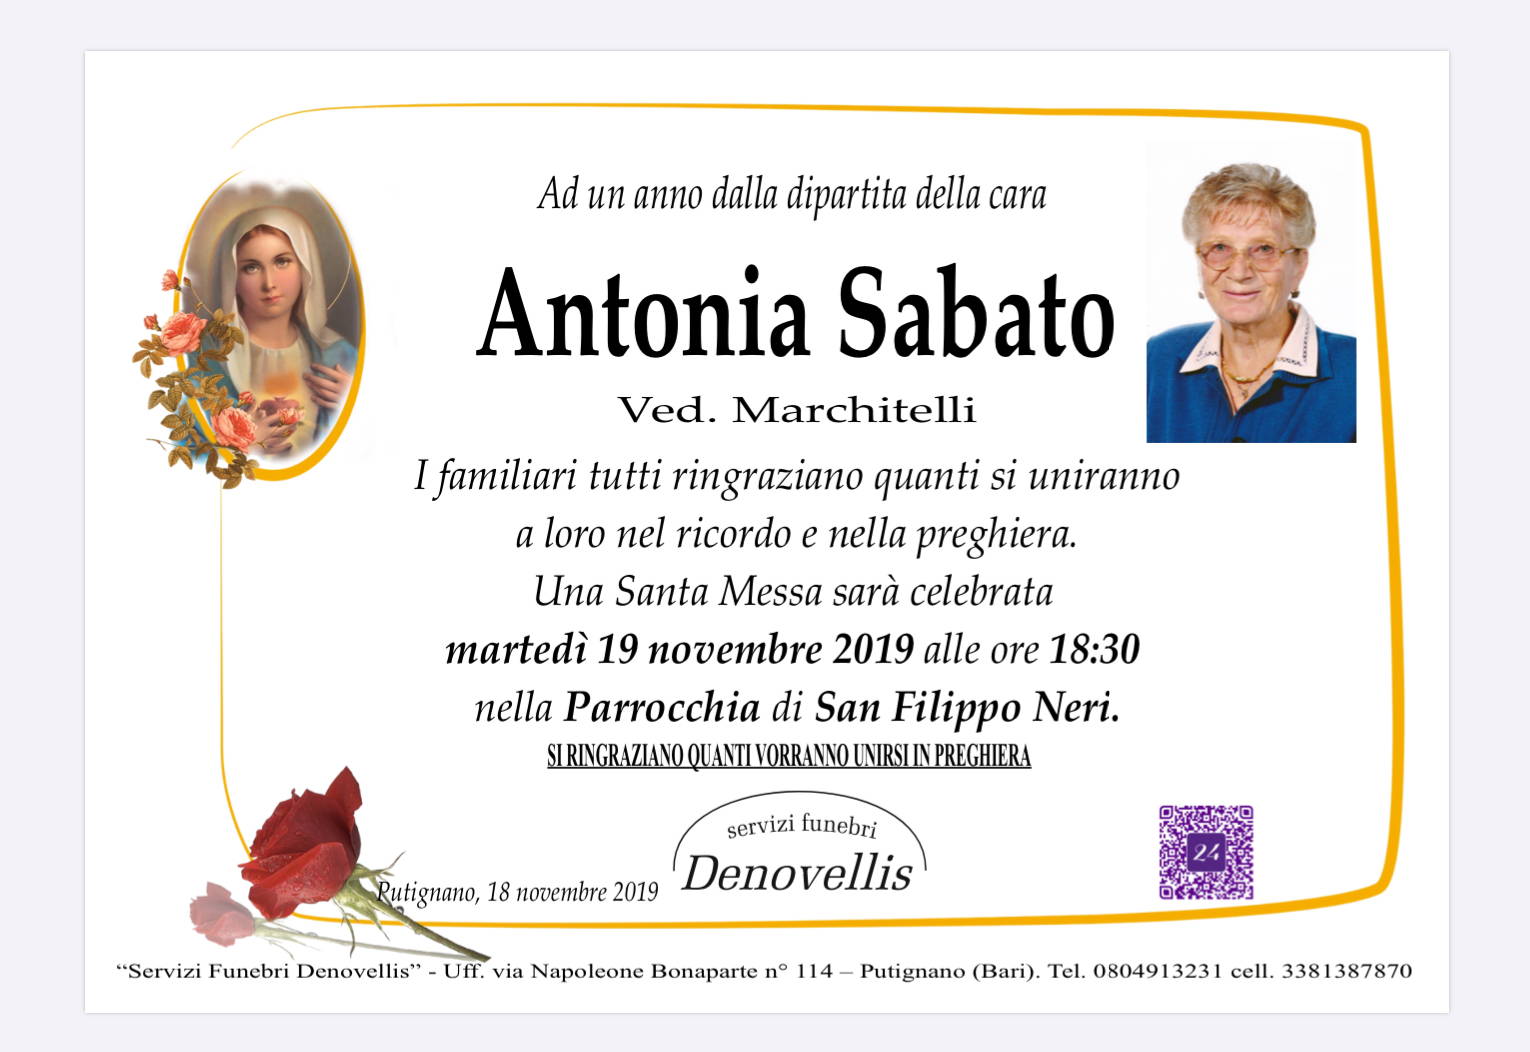 Antonia Sabato